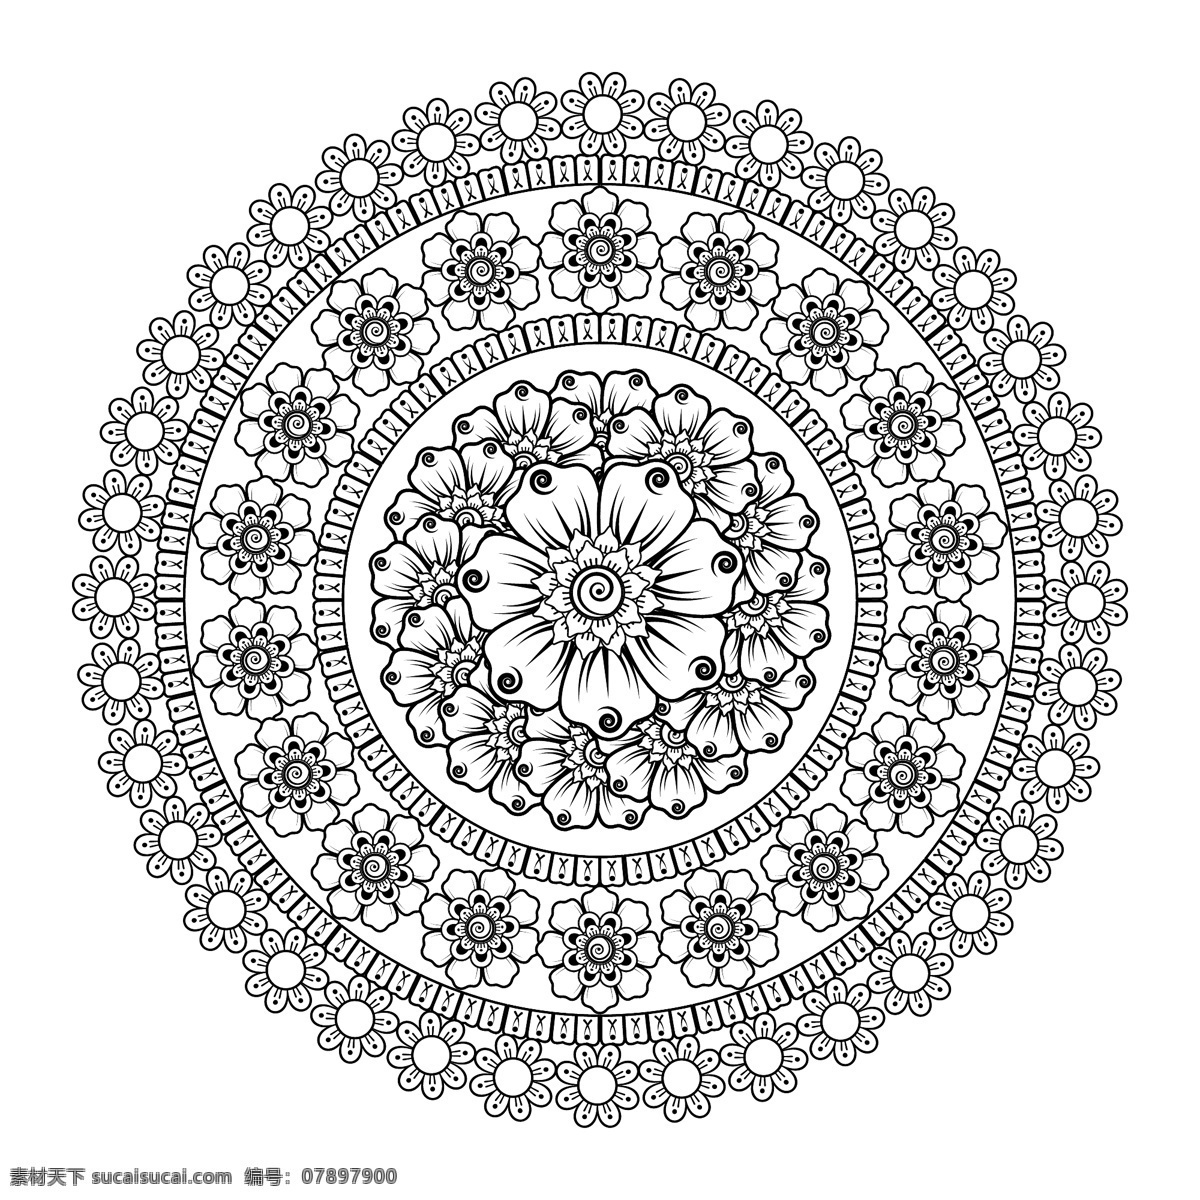 黑白 花朵 图案 边框 圆形 圆环 环形 素描 矢量 高清图片